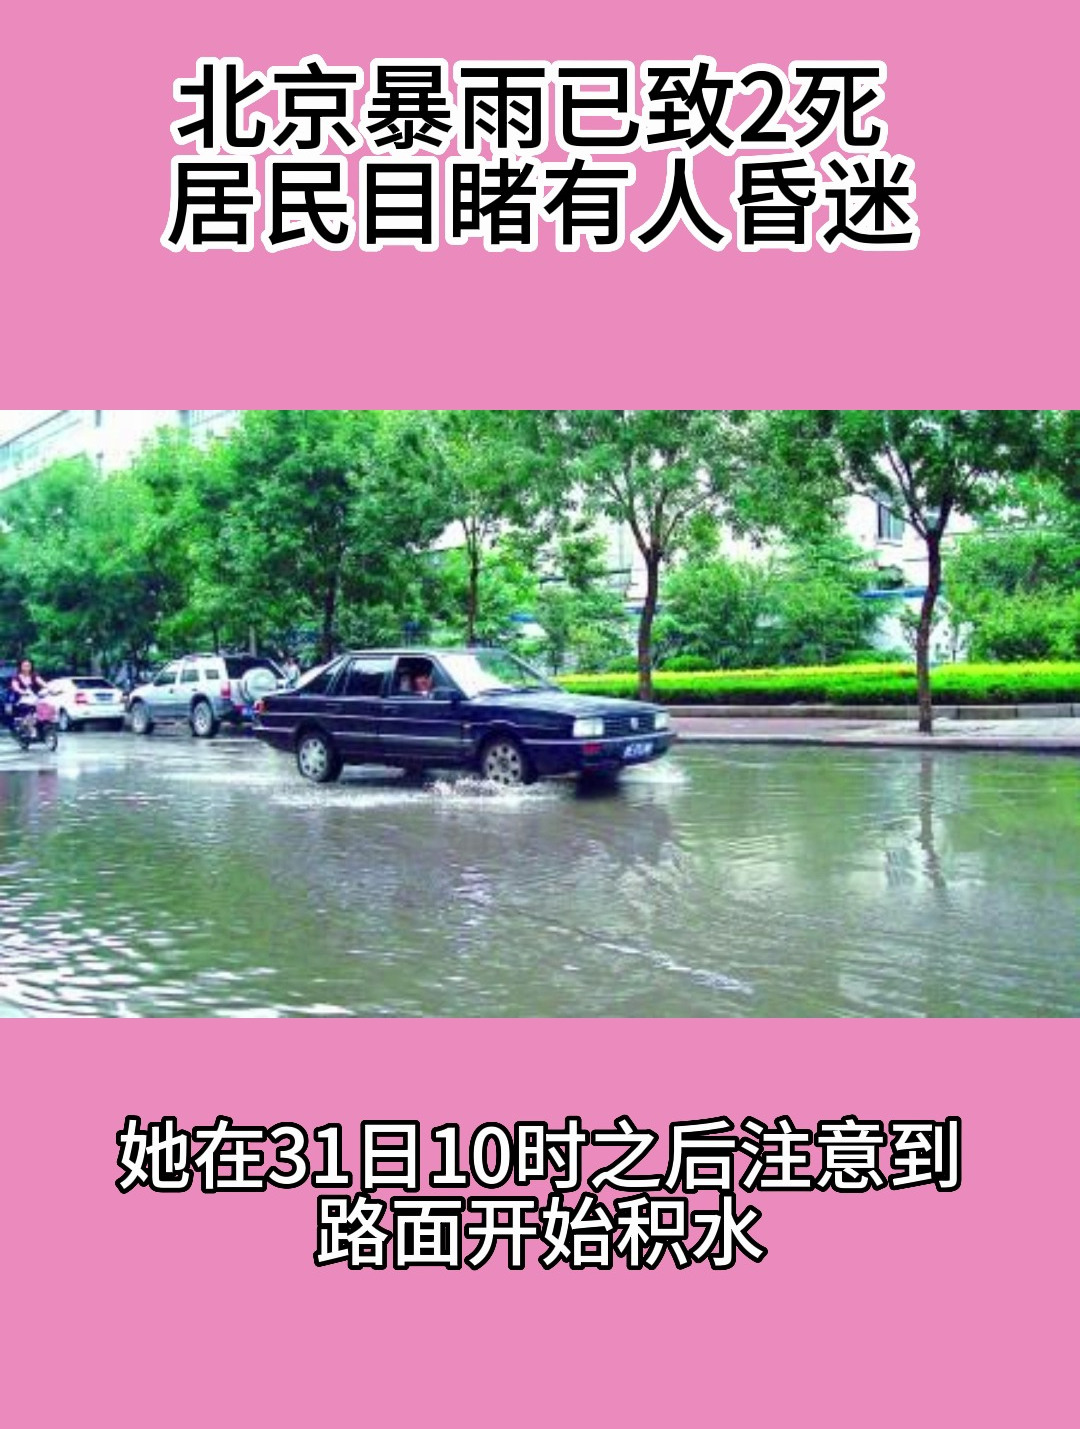 北京豪雨、11人死亡 福建270万人被災：時事ドットコム